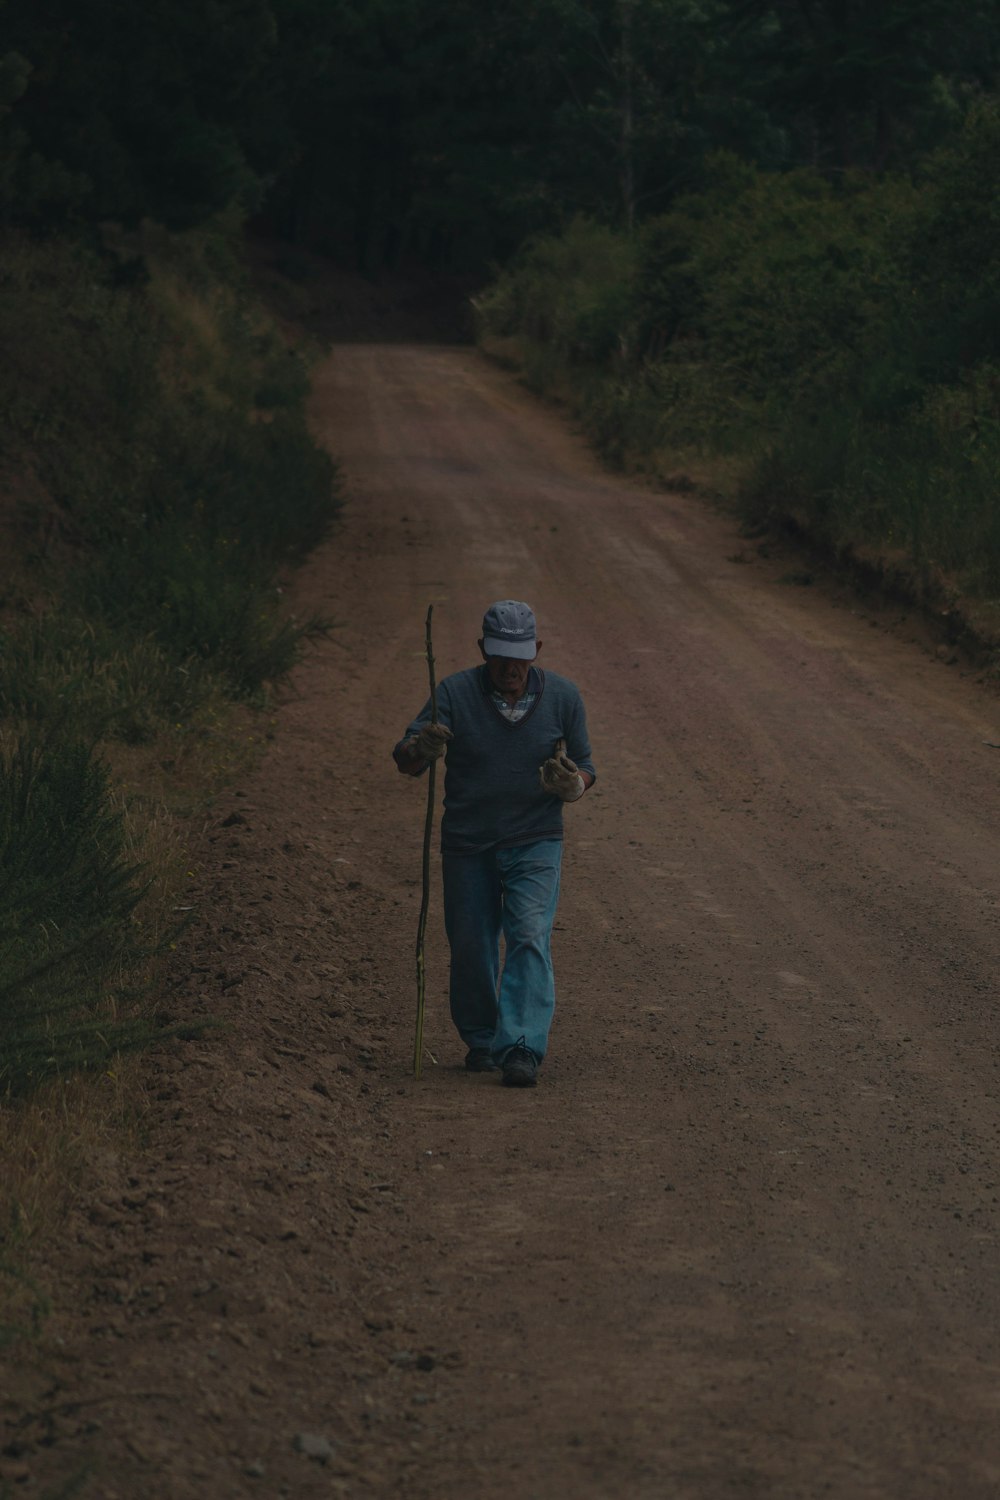 man in black jacket walking on dirt road during daytime